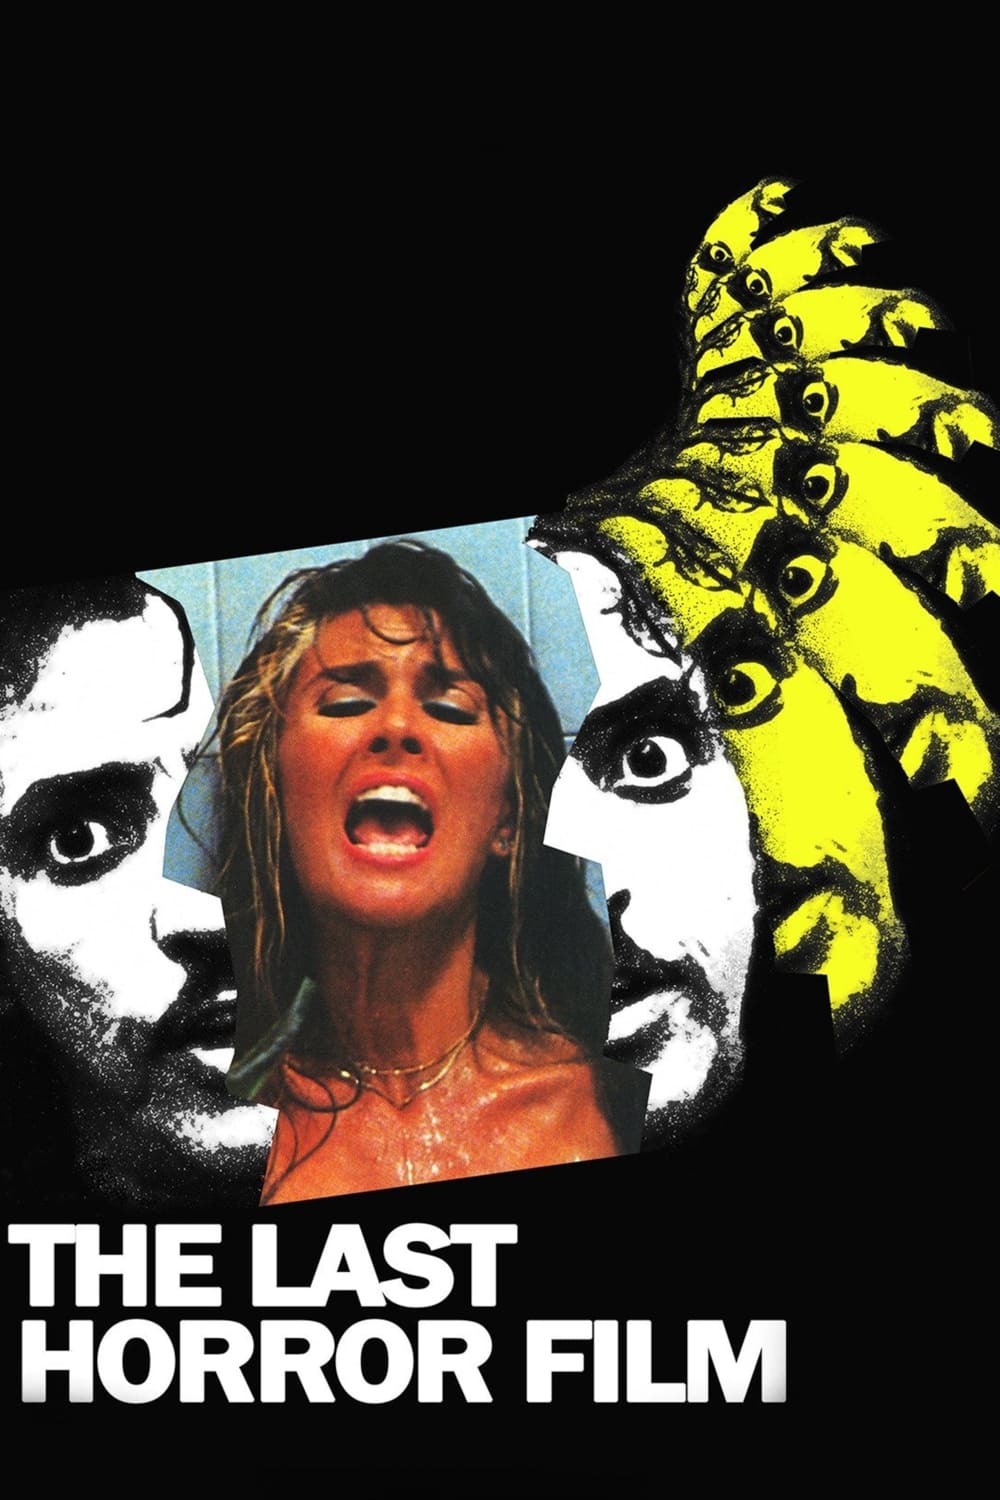 The Last Horror Film (1982)